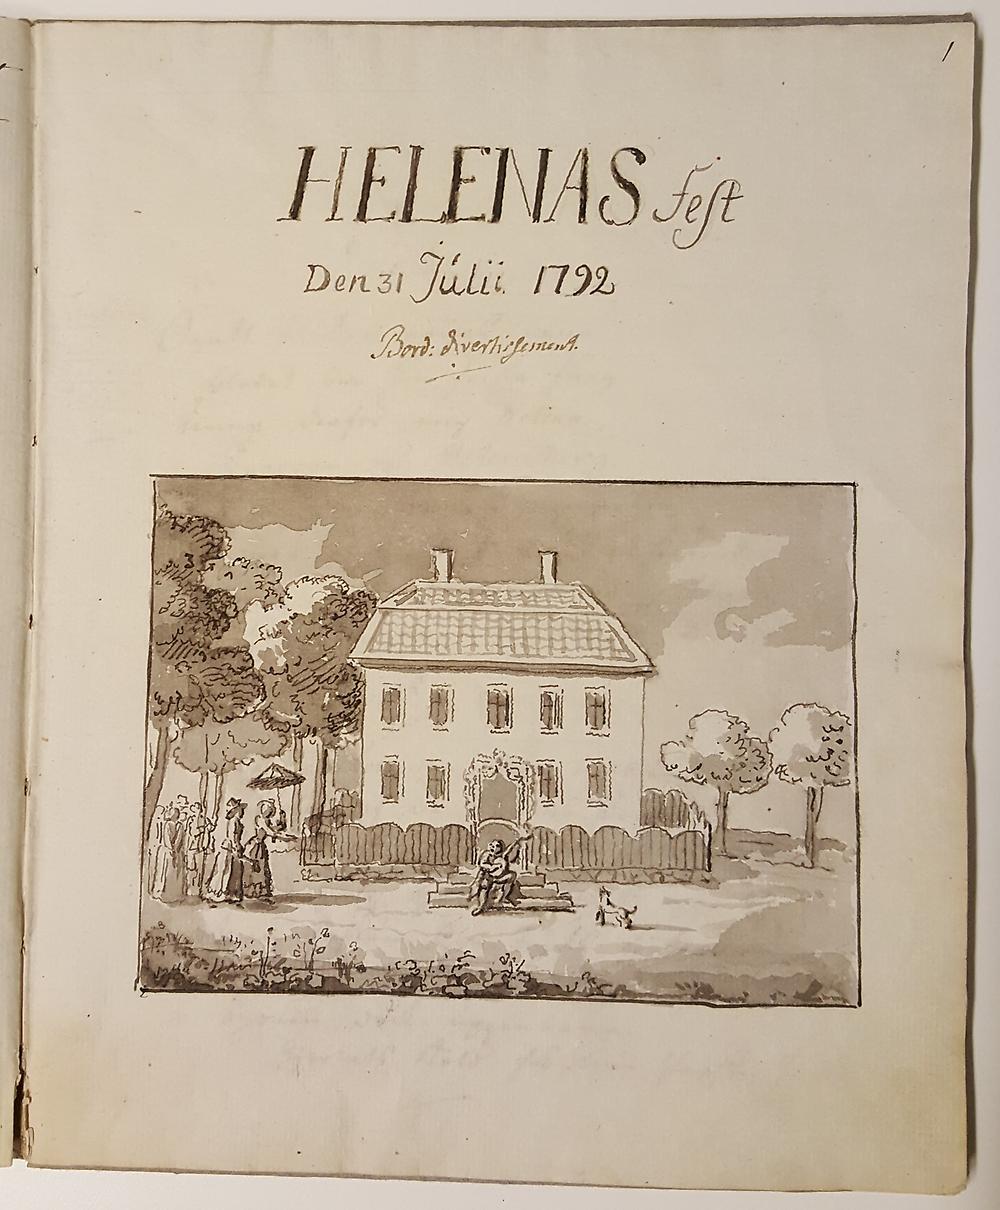 Titelsida till Bellmans handskrift "Helenas fest den 31 juli 1792"